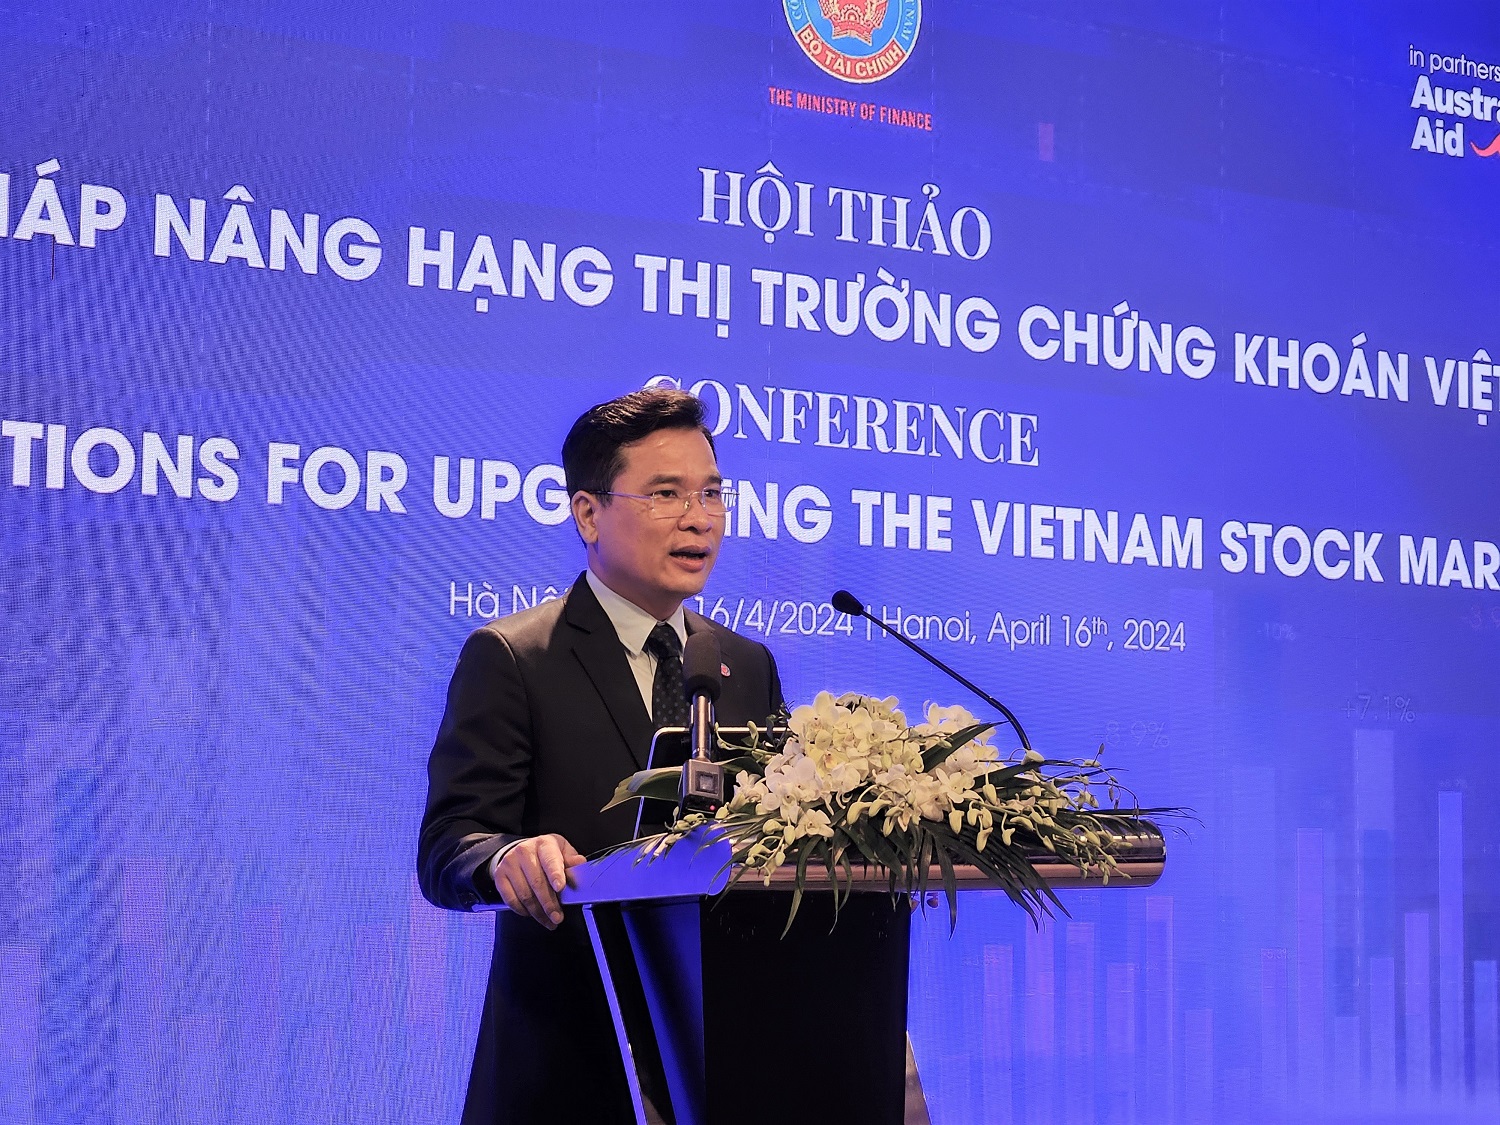 Hội thảo Giải pháp nâng hạng thị trường chứng khoán Việt Nam